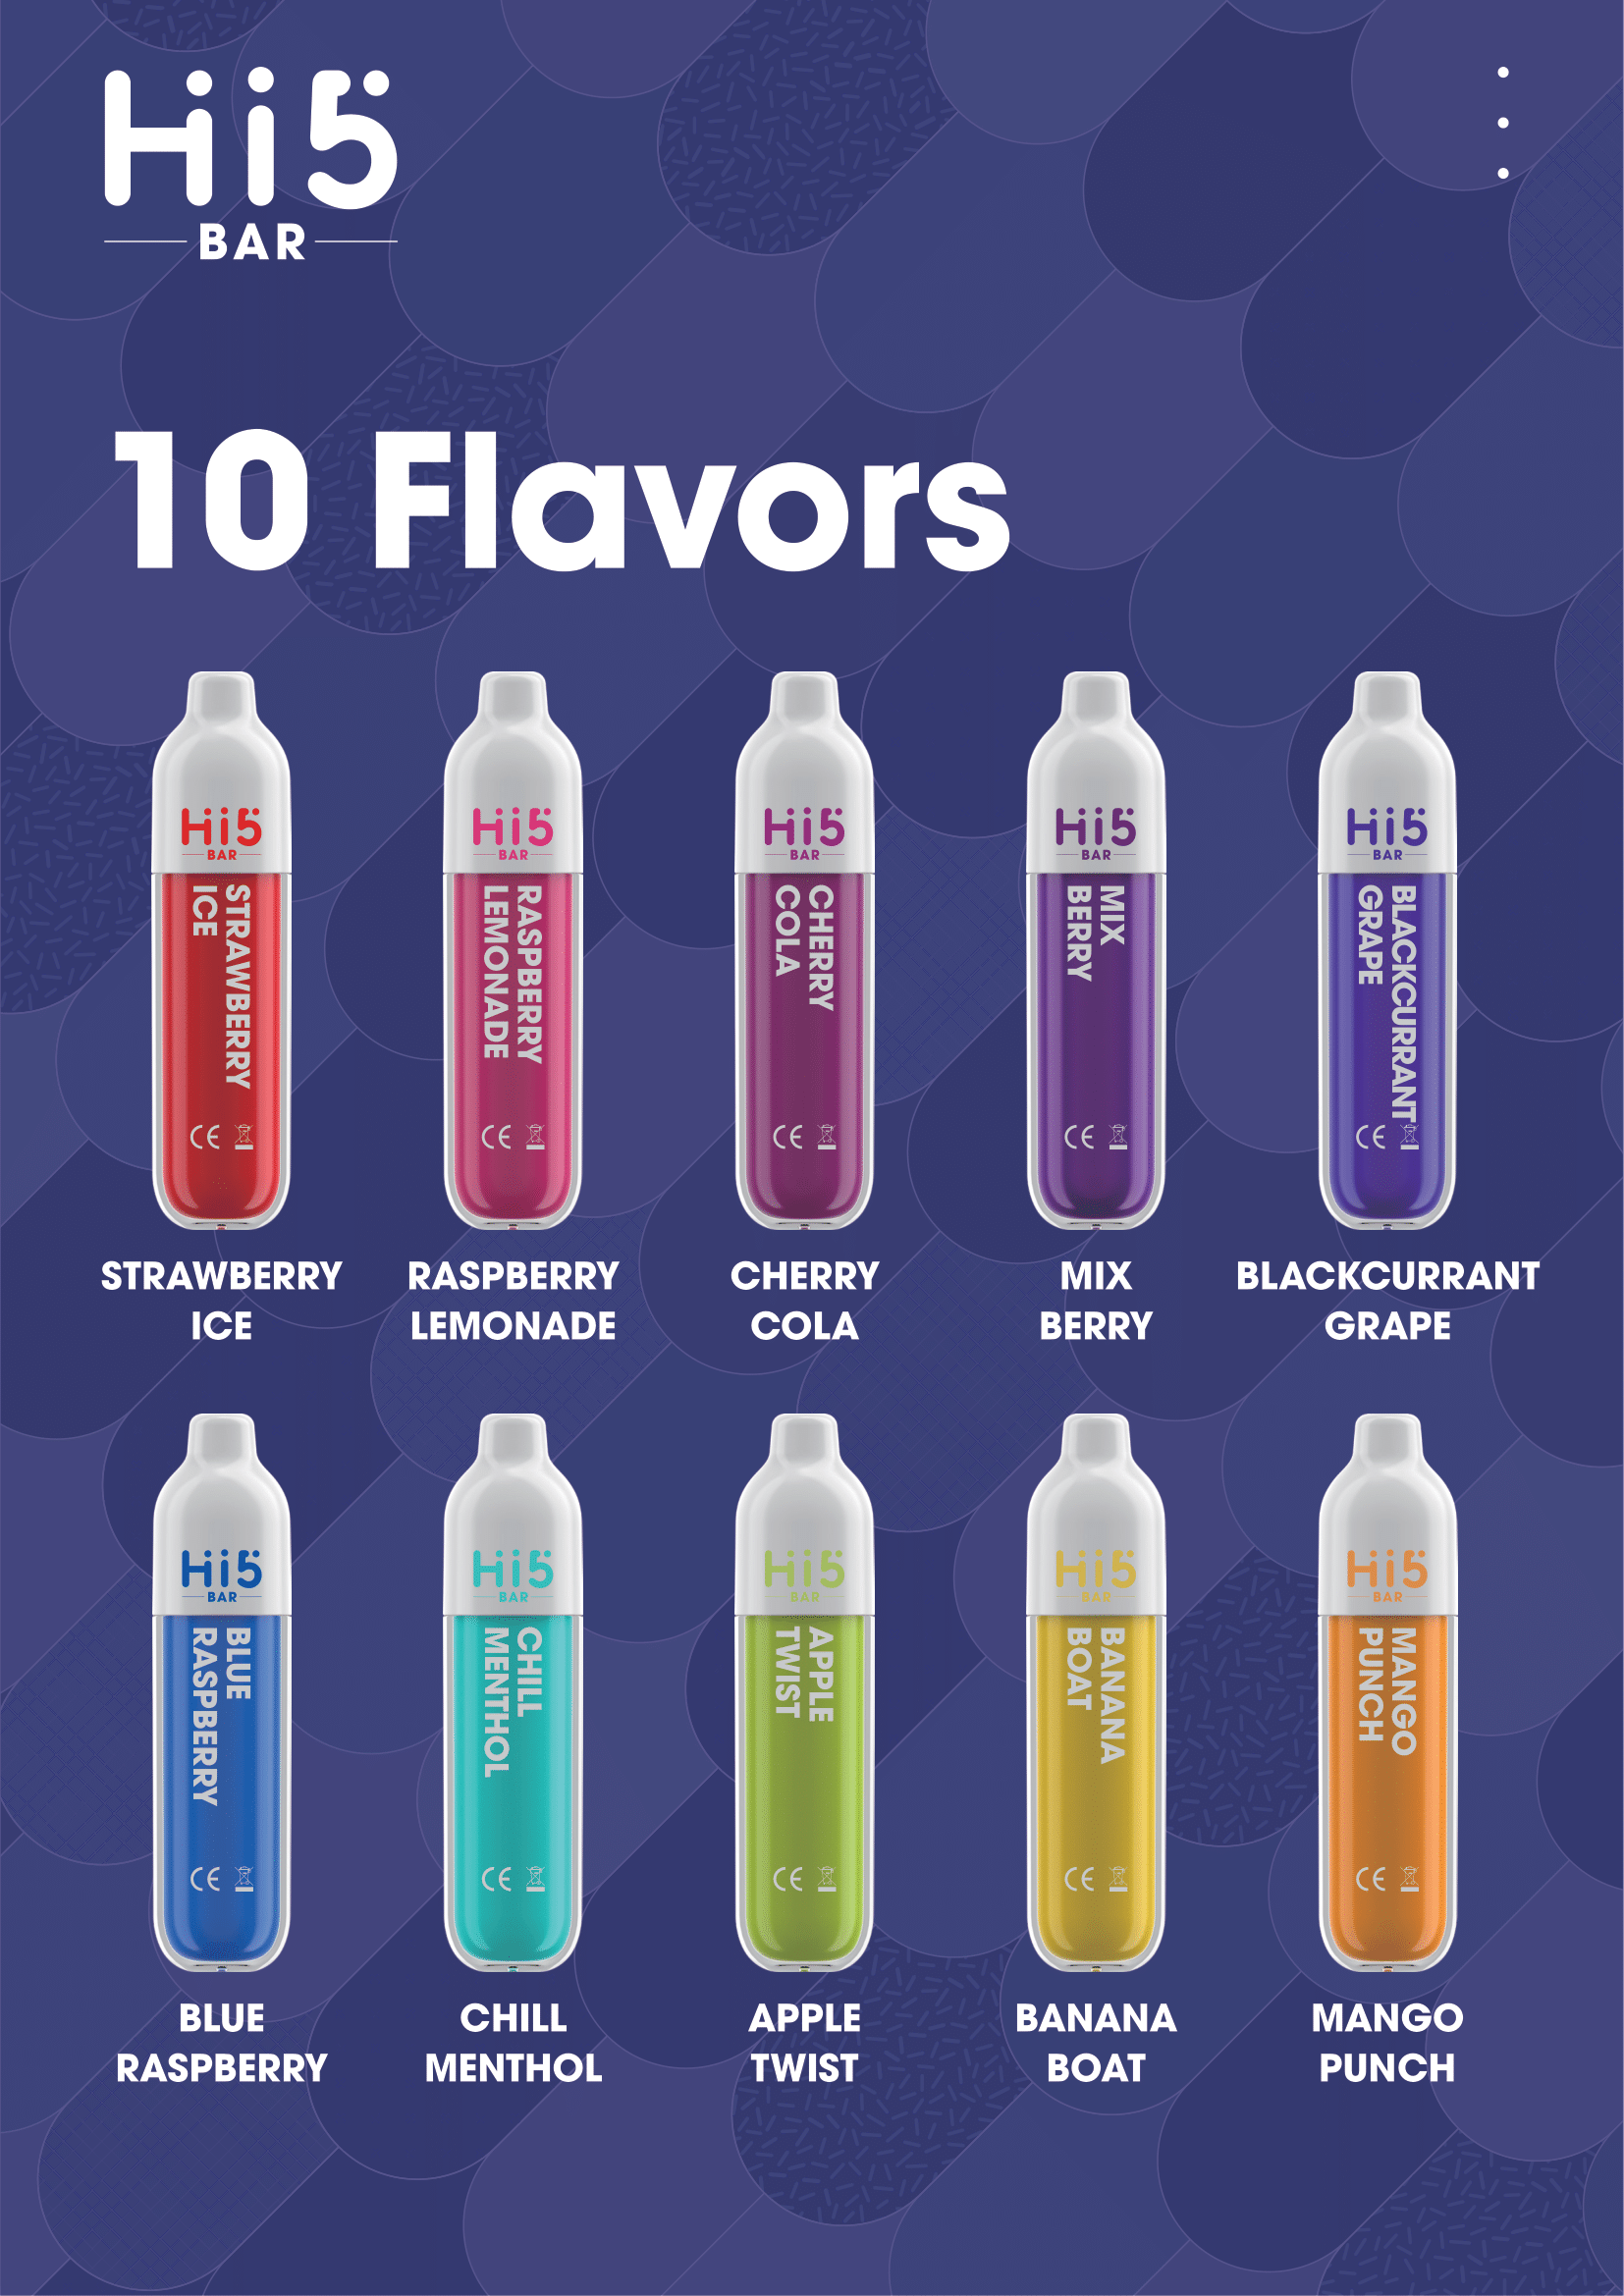 Hi5 bar Disposable Vape Mix Berry Flavor